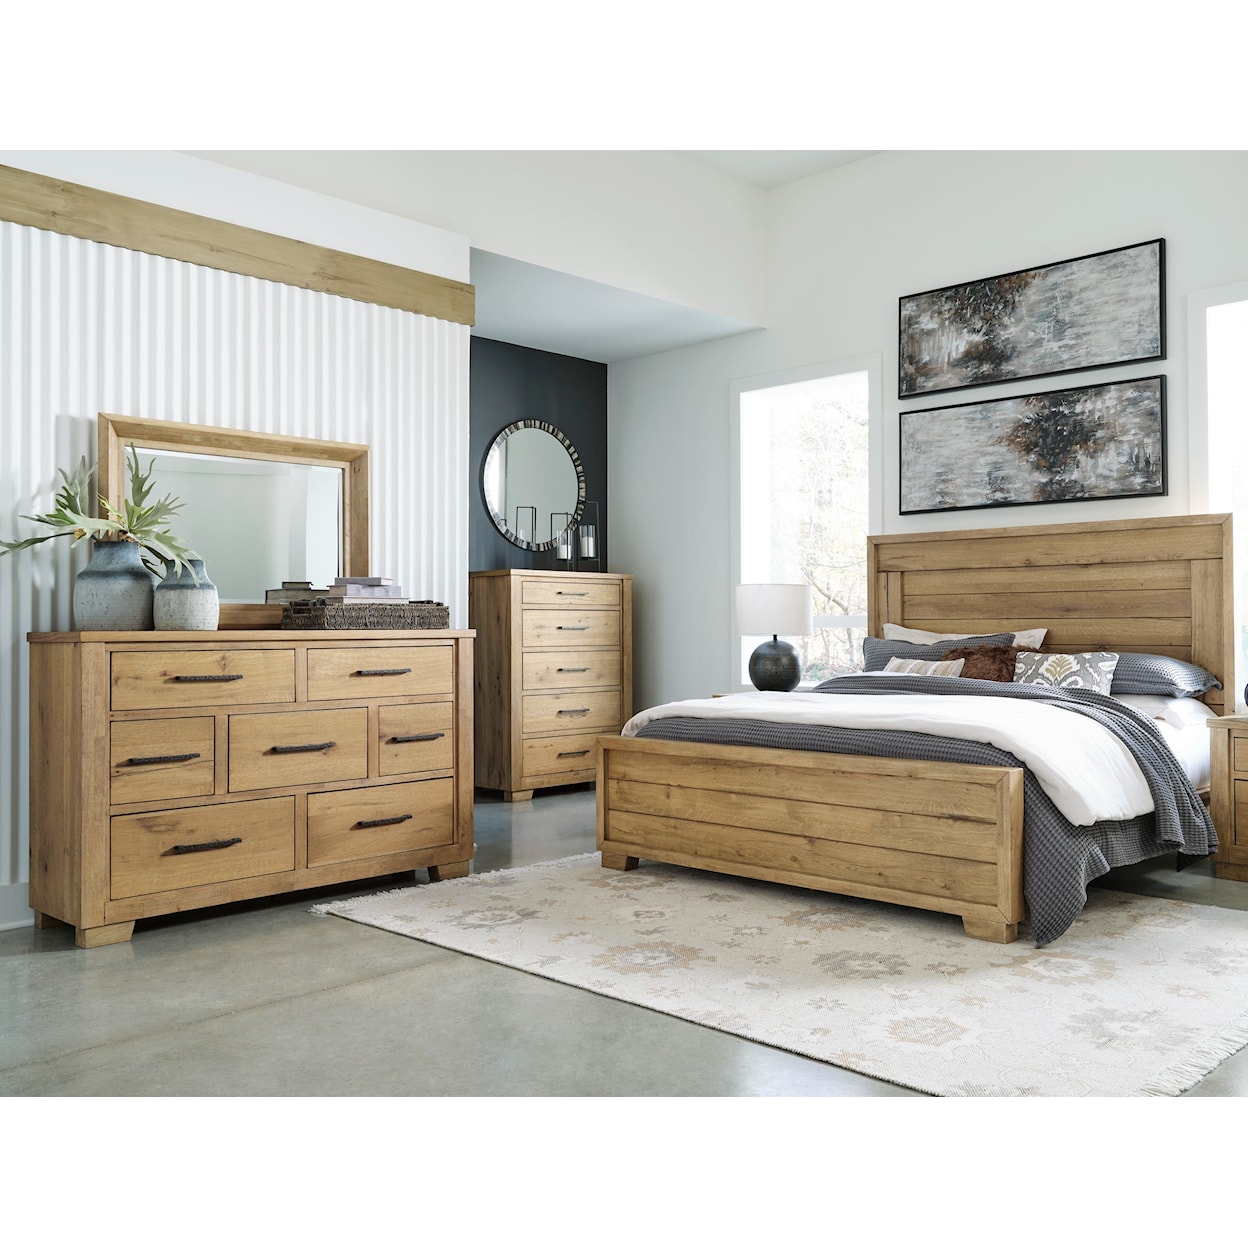 Ashley Furniture Signature Design Galliden King Bedroom Set